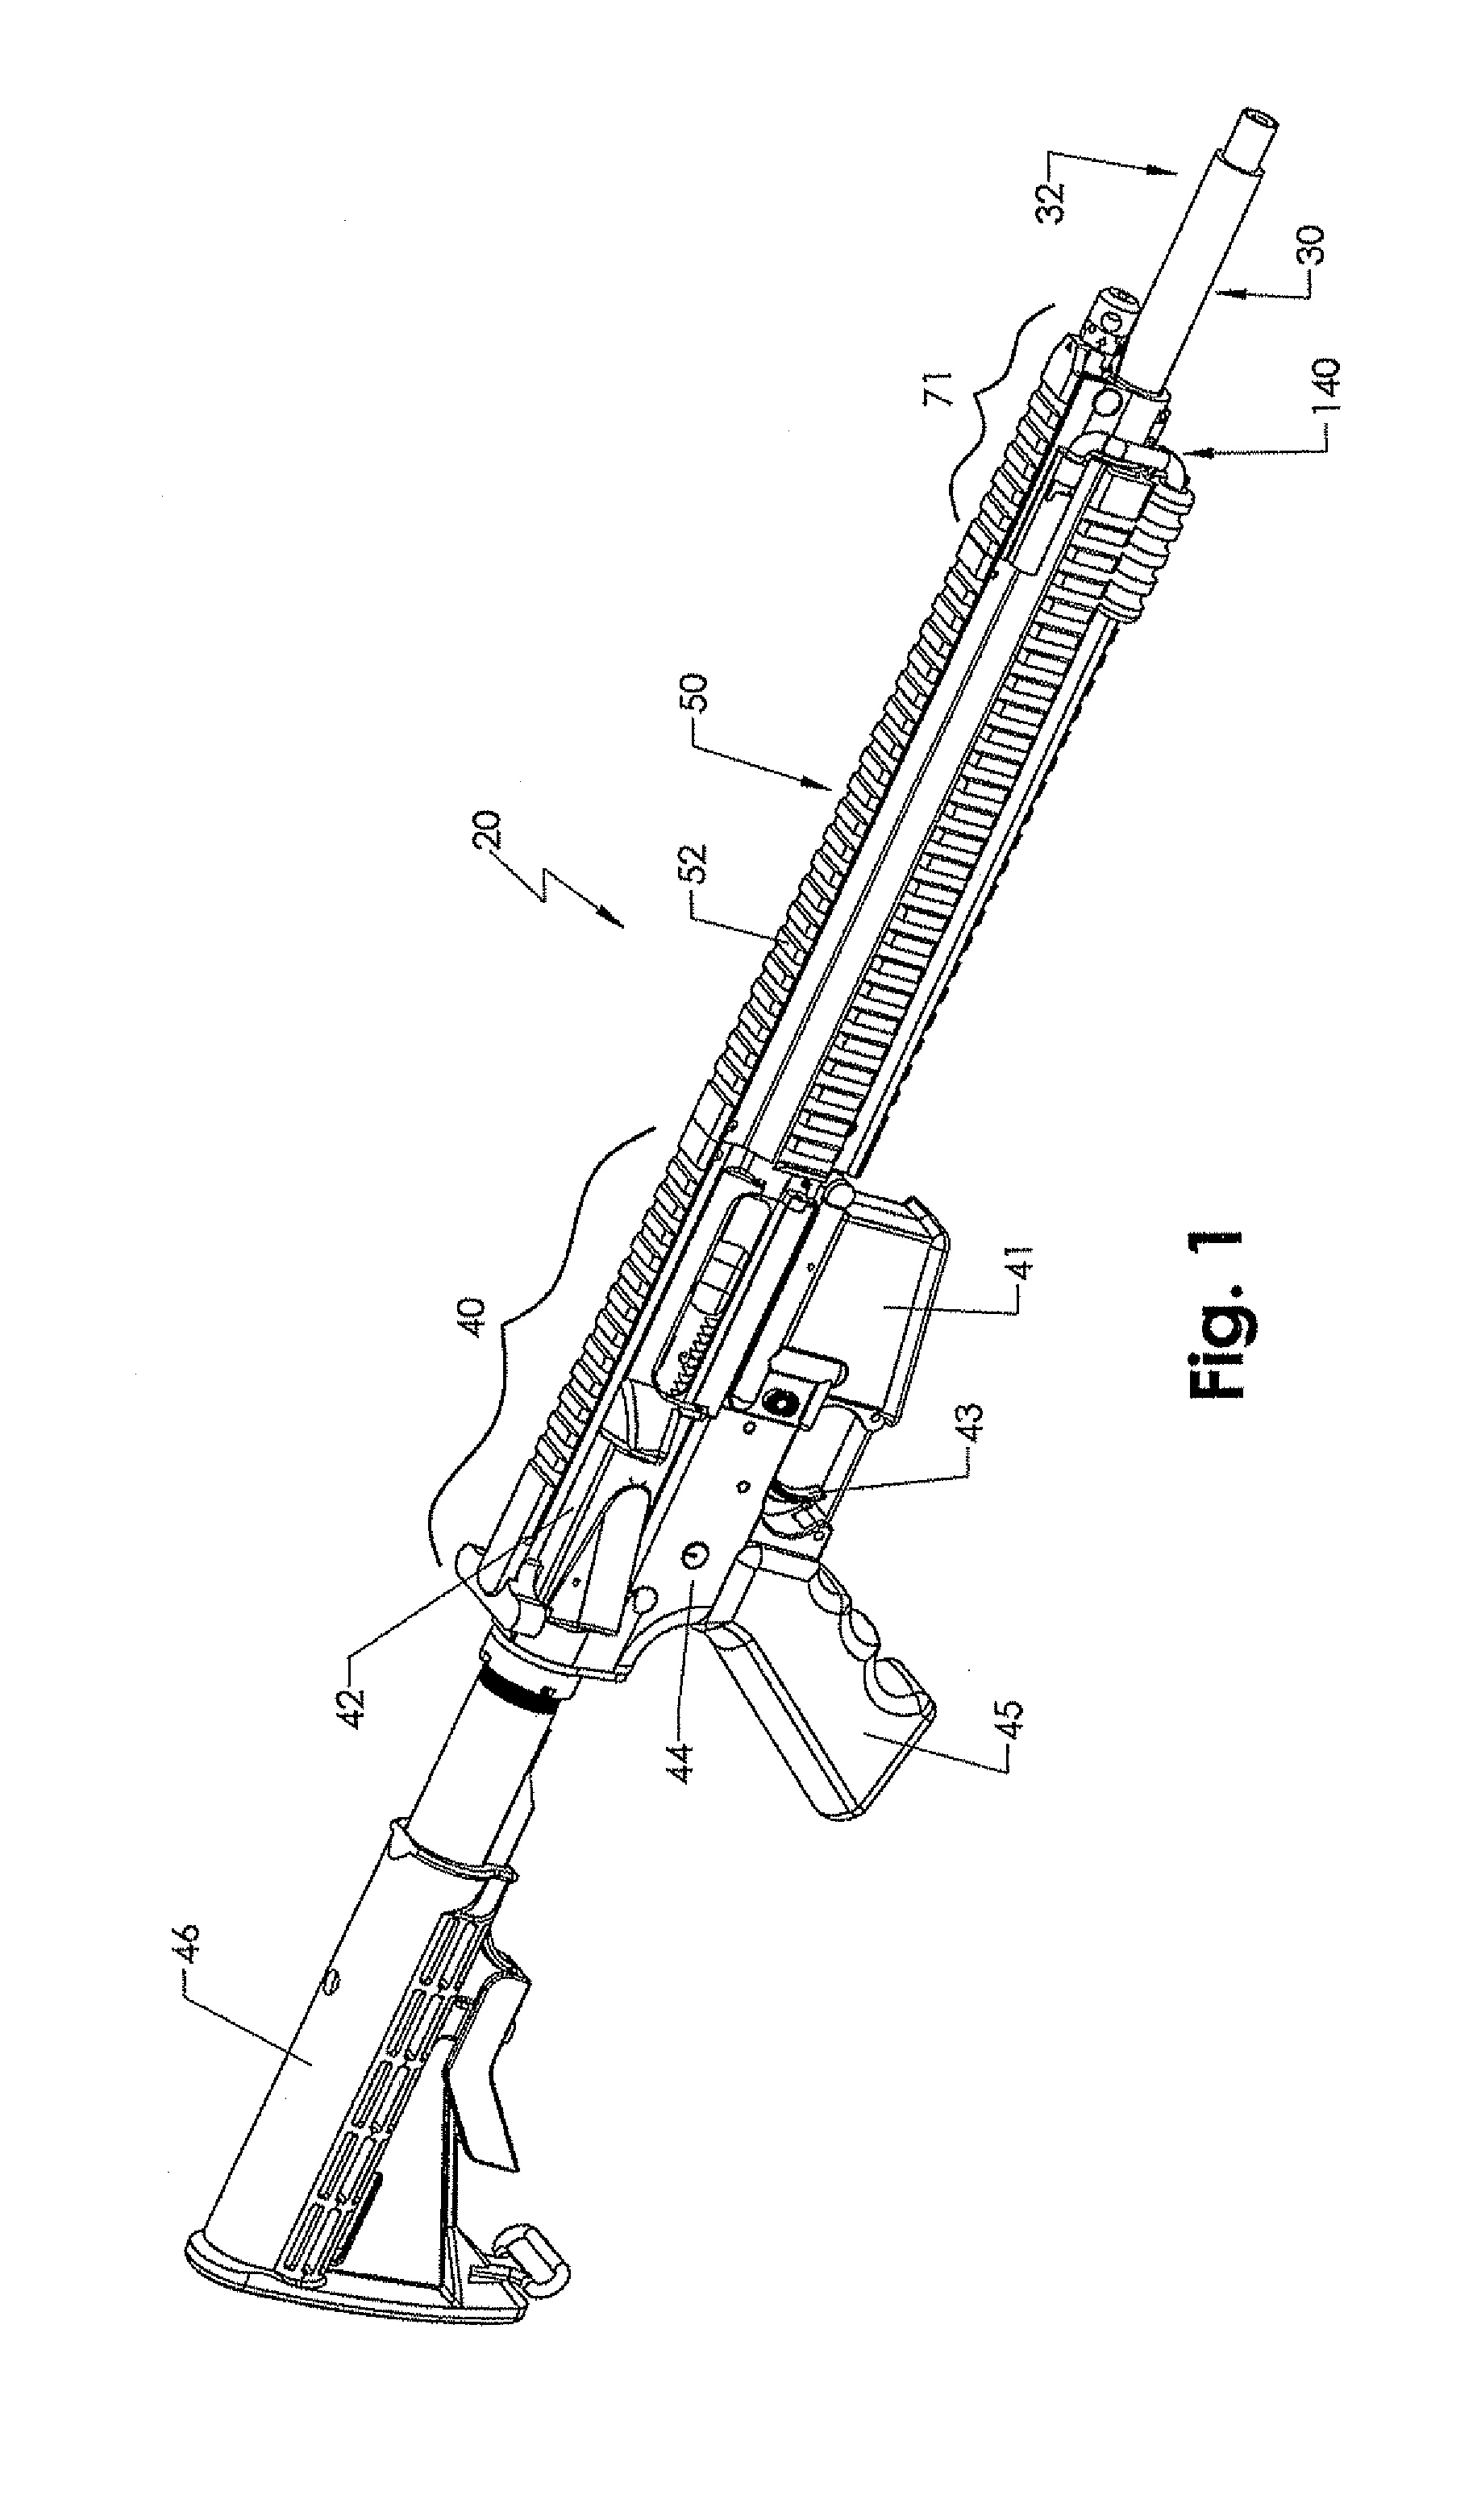 Firearm barrel retaining system